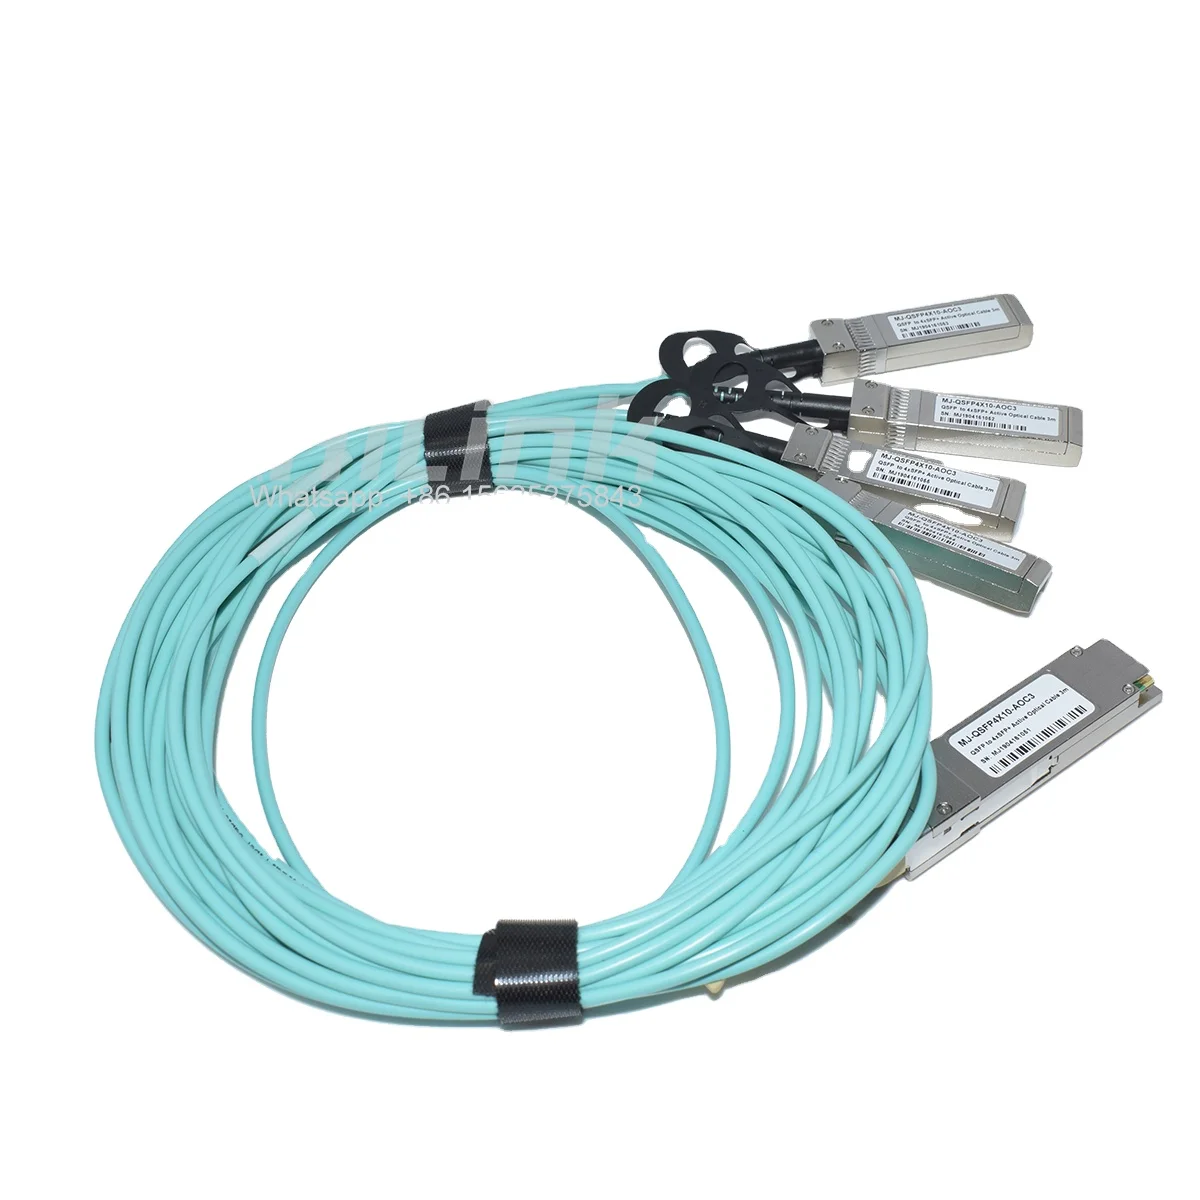 Волоконно-оптический кабель 40G QSFP + - QSFP + 3-метровый кабель AOC